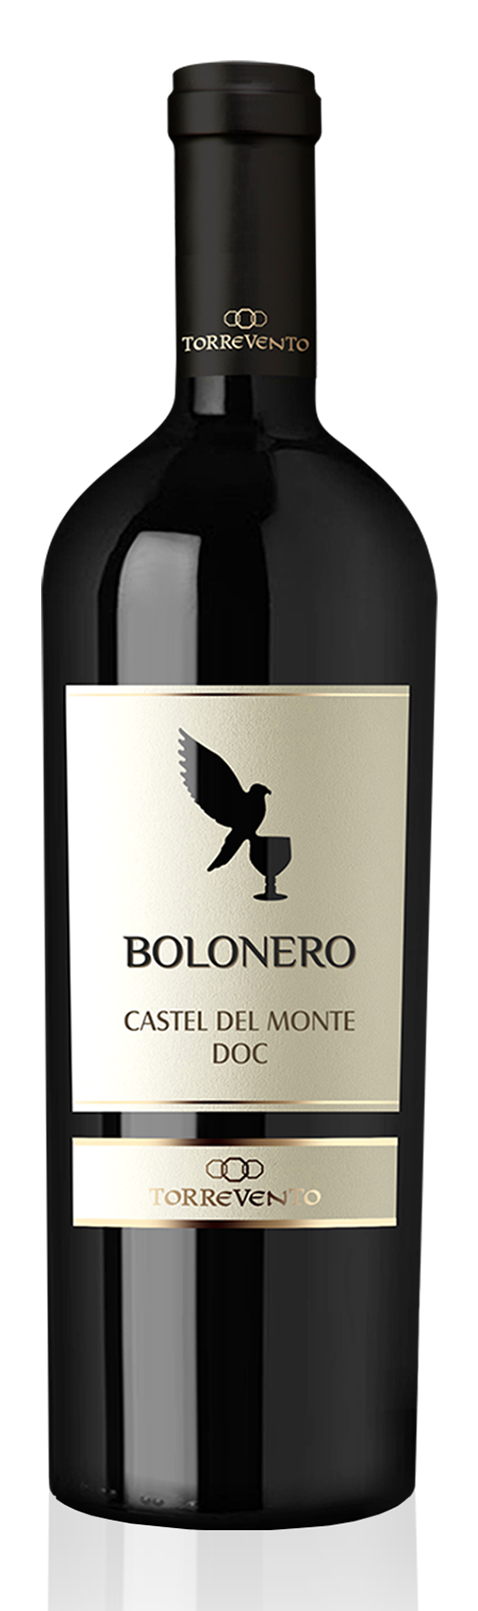 Bolonero Castel del Monte DOC 2019 Torrevento